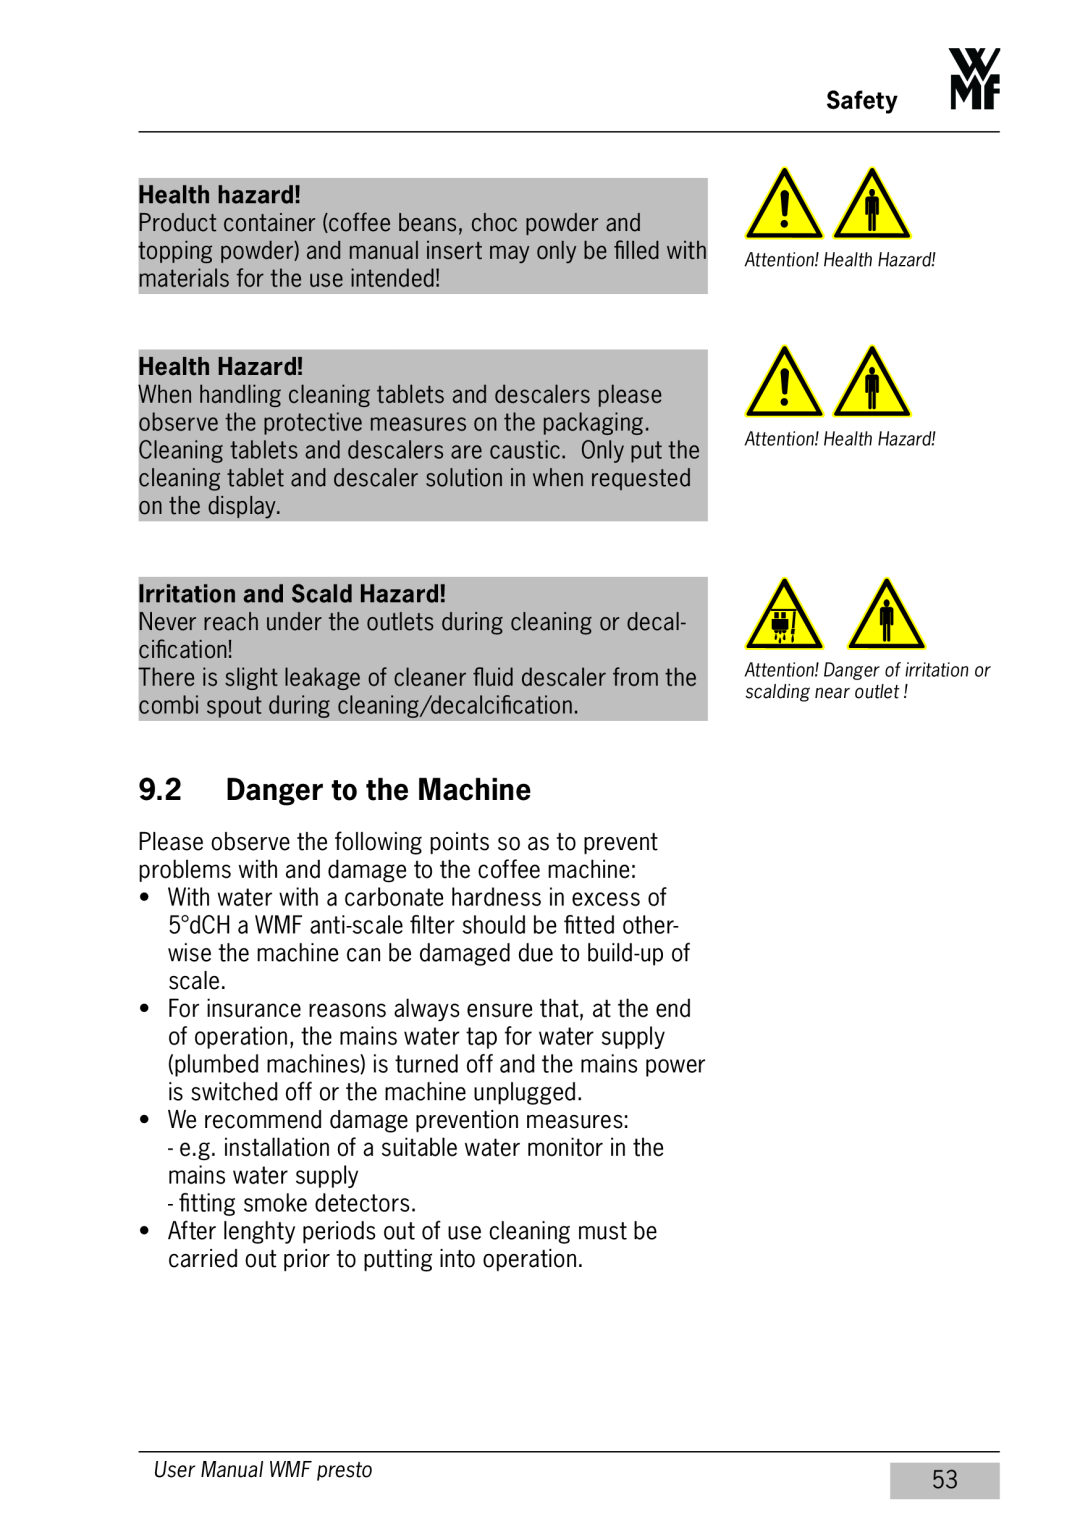 WMF Americas 1400 user manual Danger to the Machine, Health hazard, Health Hazard, Irritation and Scald Hazard, Safety 